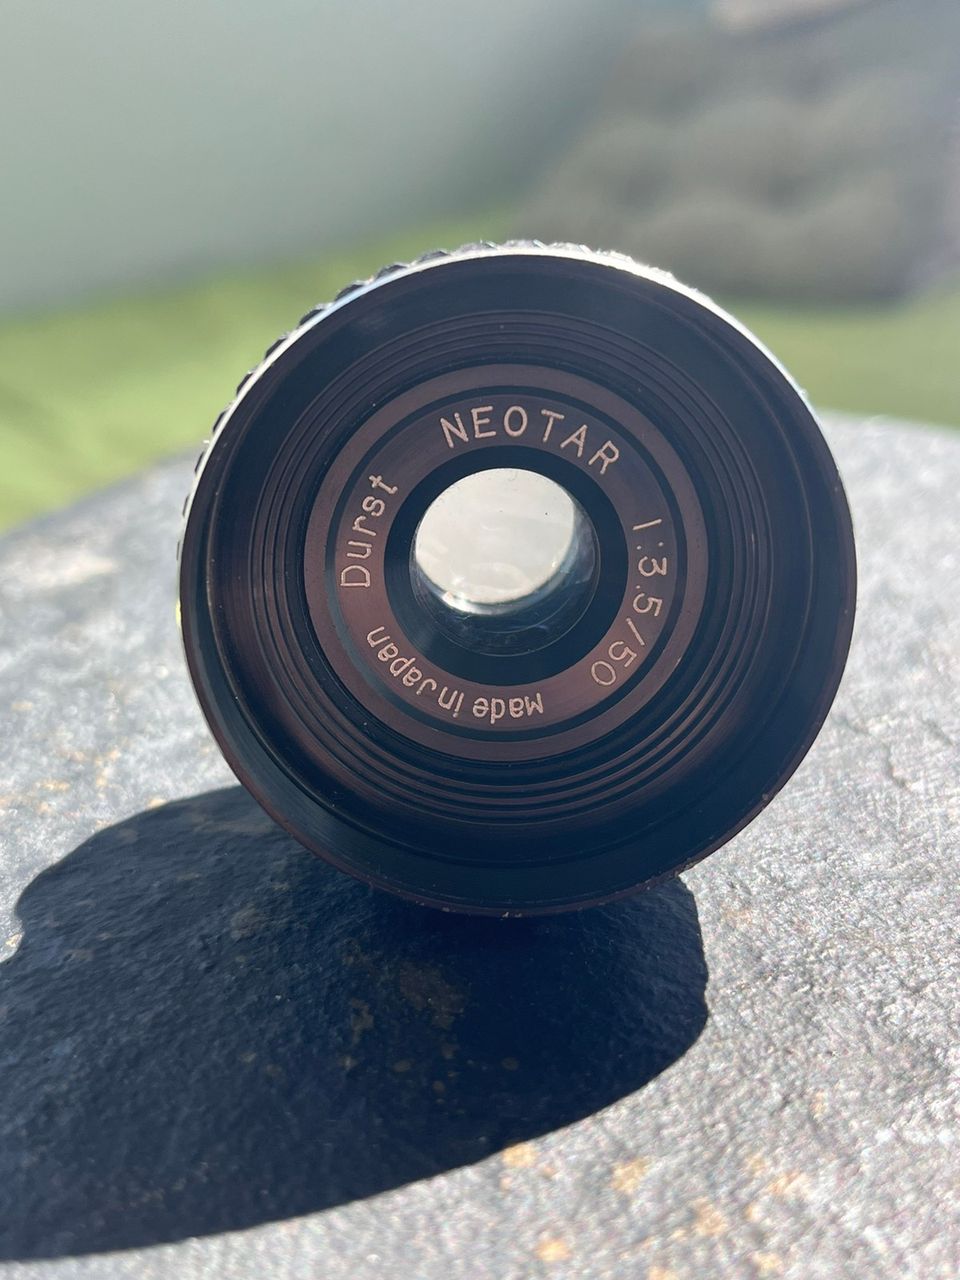 Durst Neotar 50mm 3.5 enlarger lens